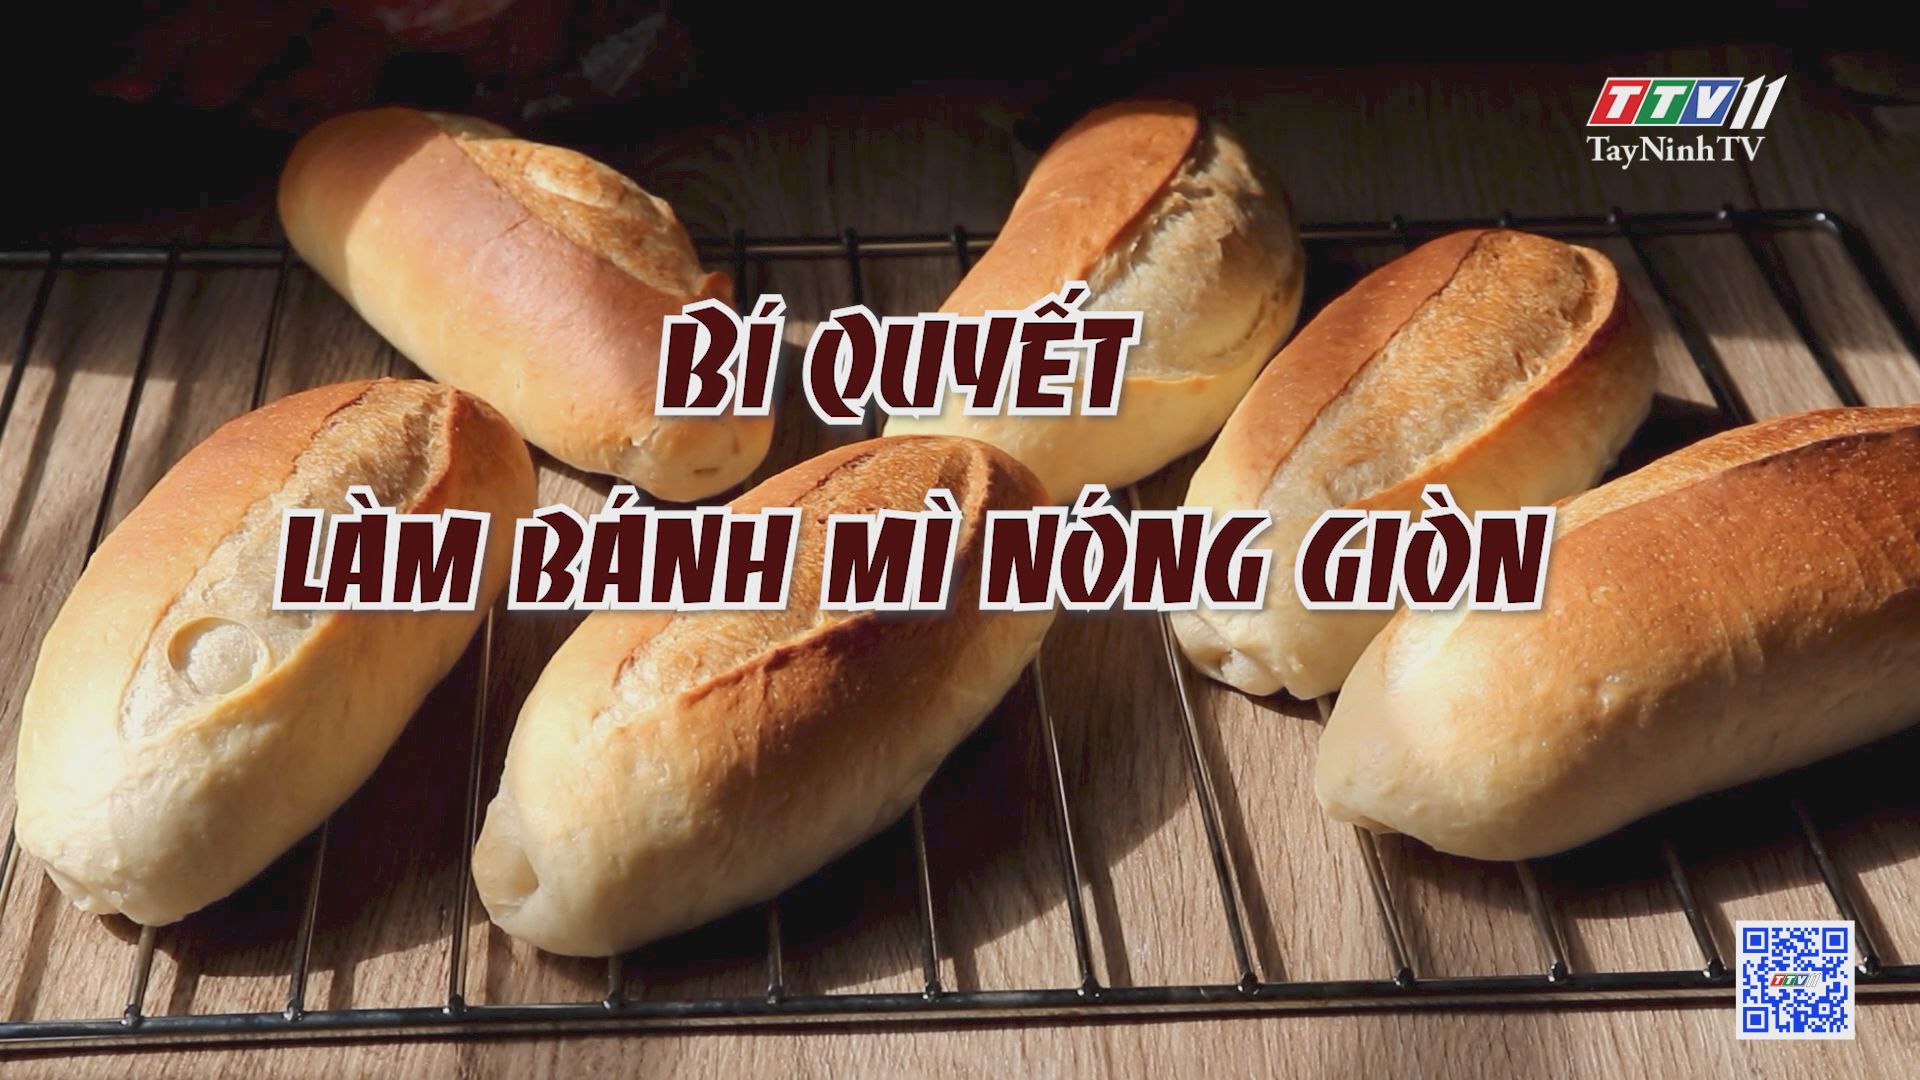 Bí quyết làm bánh mì nóng giòn | LAN TỎA NĂNG LƯỢNG TÍCH CỰC | TayNinhTVE